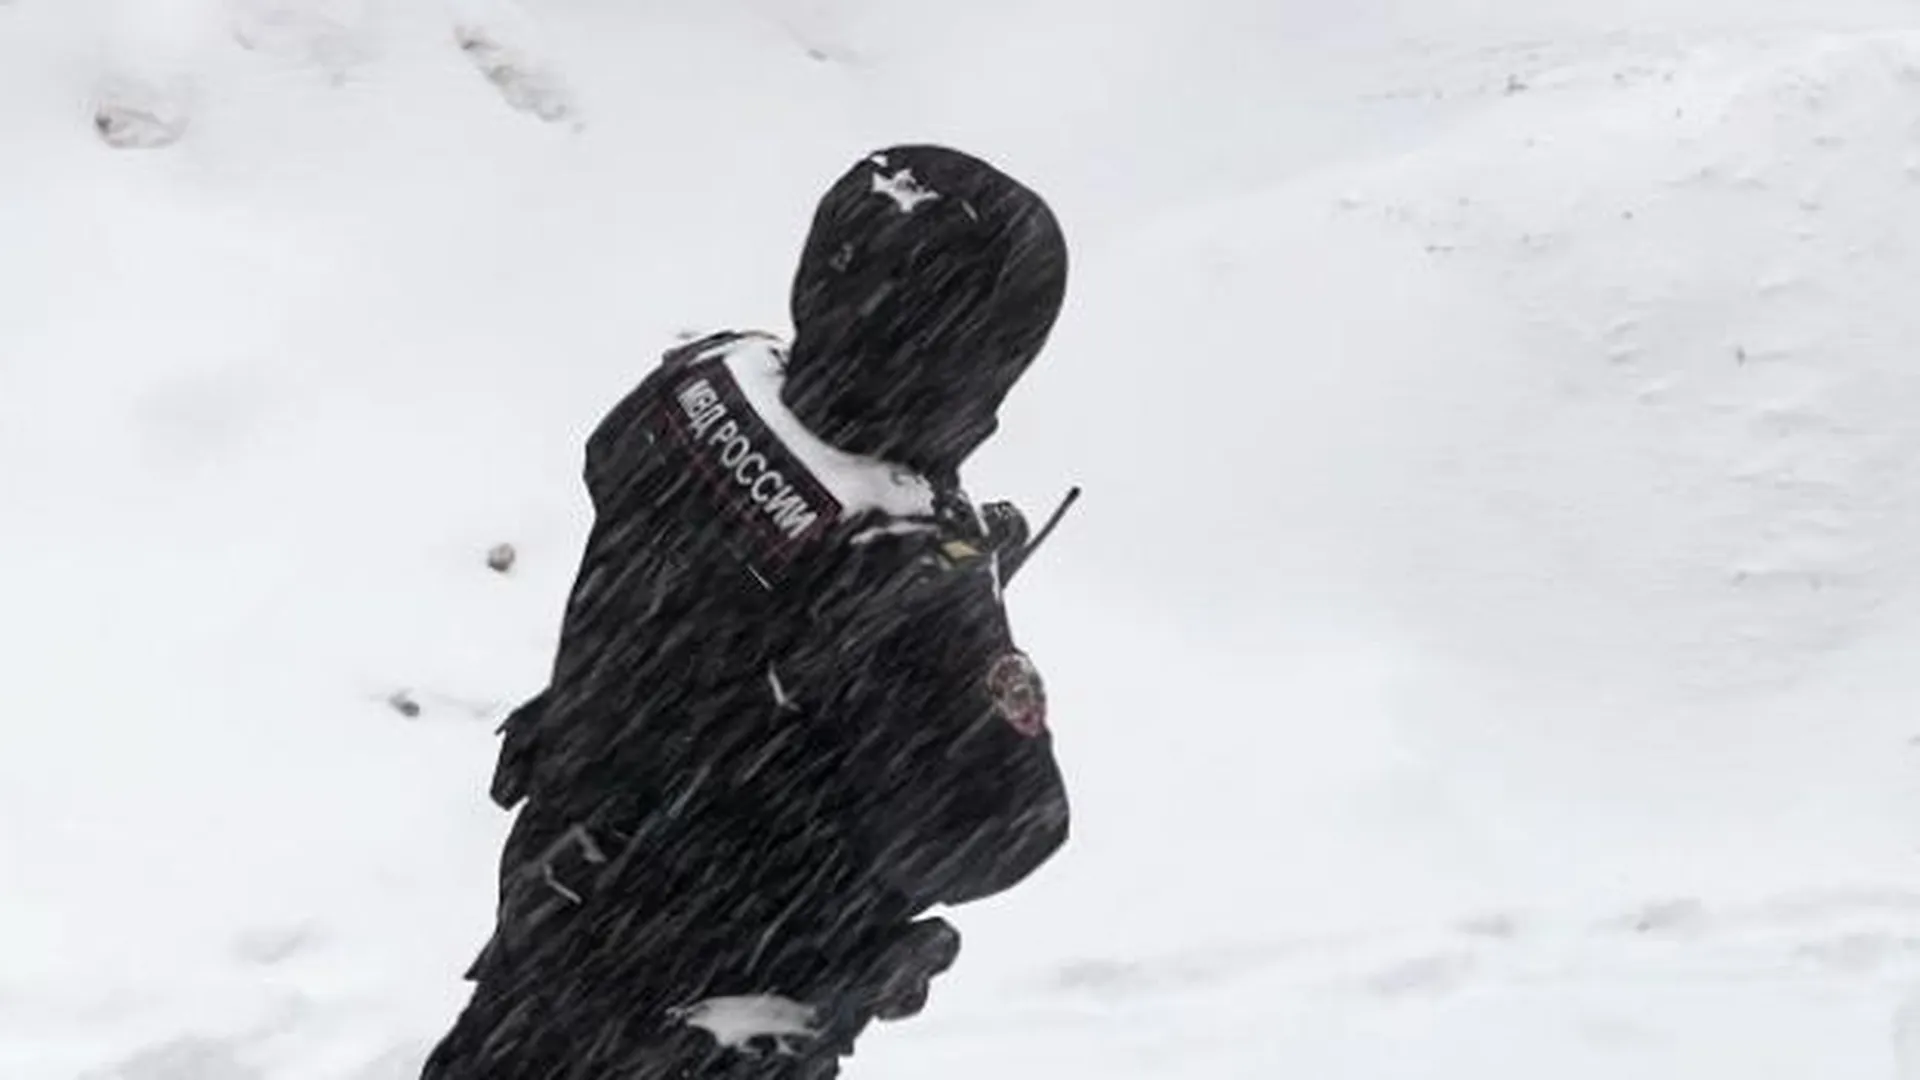 Карманник вытащил у прохожего в Москве телефон, сделав вид, что стряхивает снег с его одежды